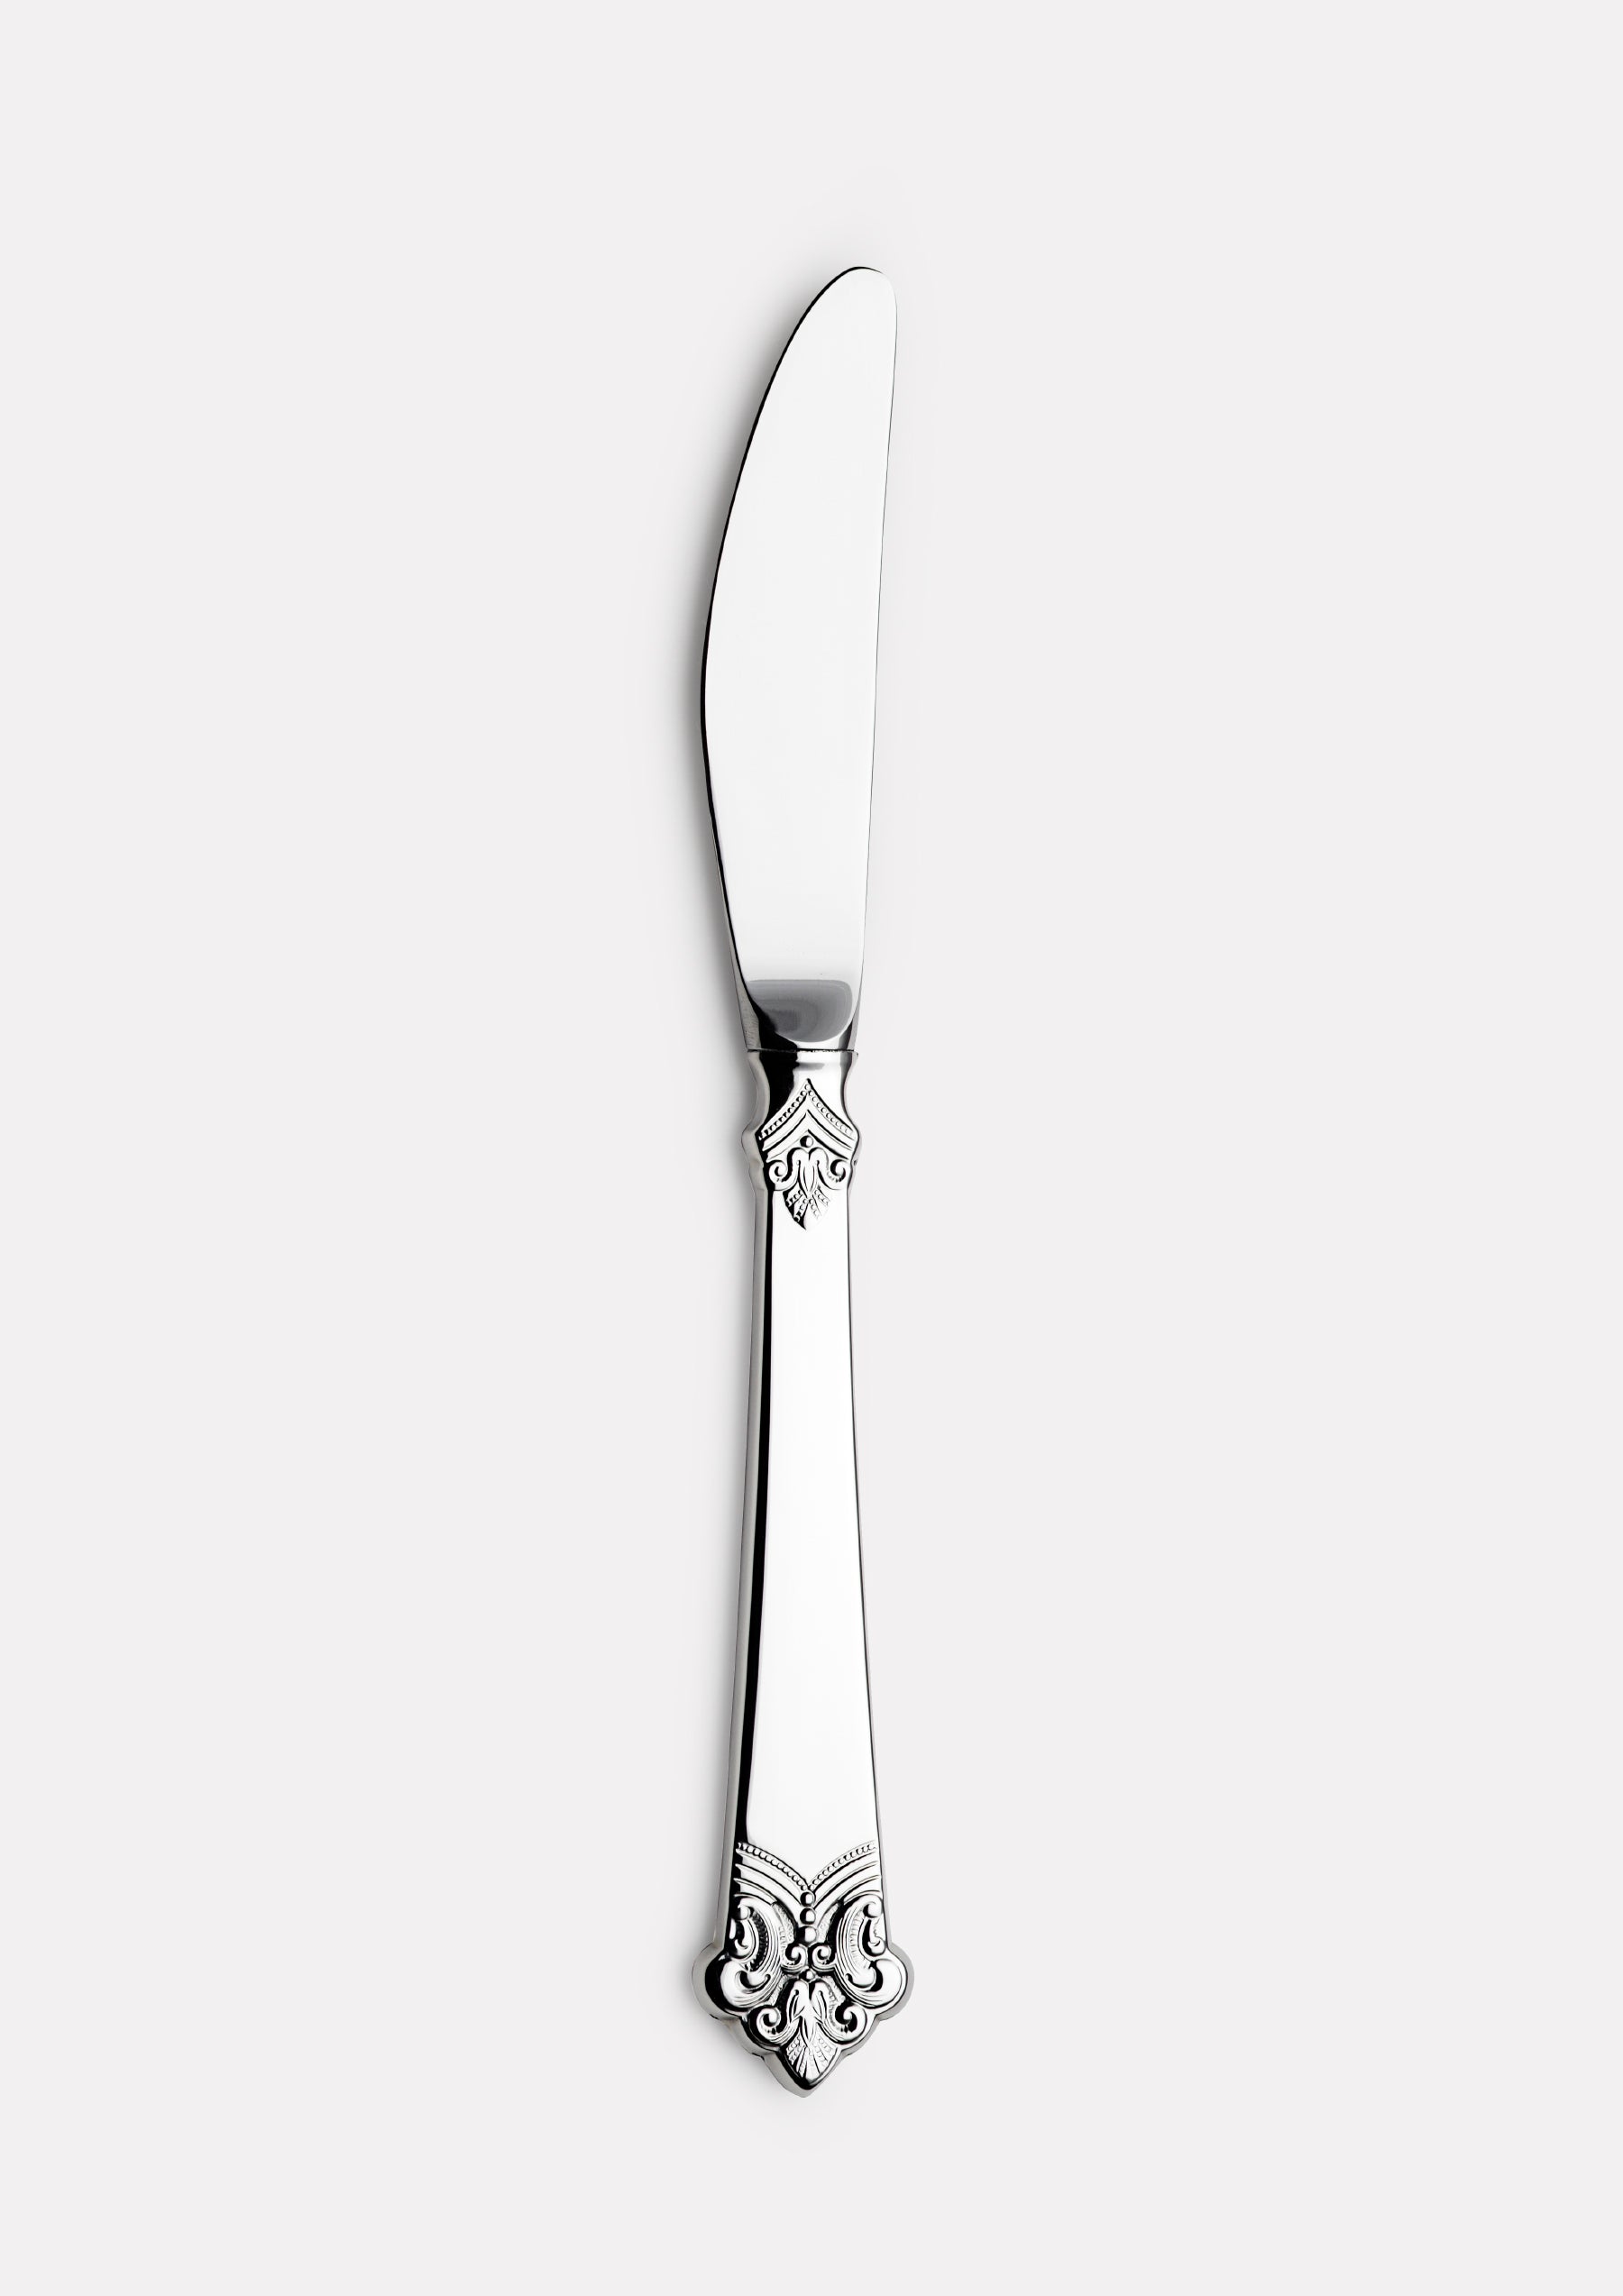 Anitra liten spisekniv med langt skaft